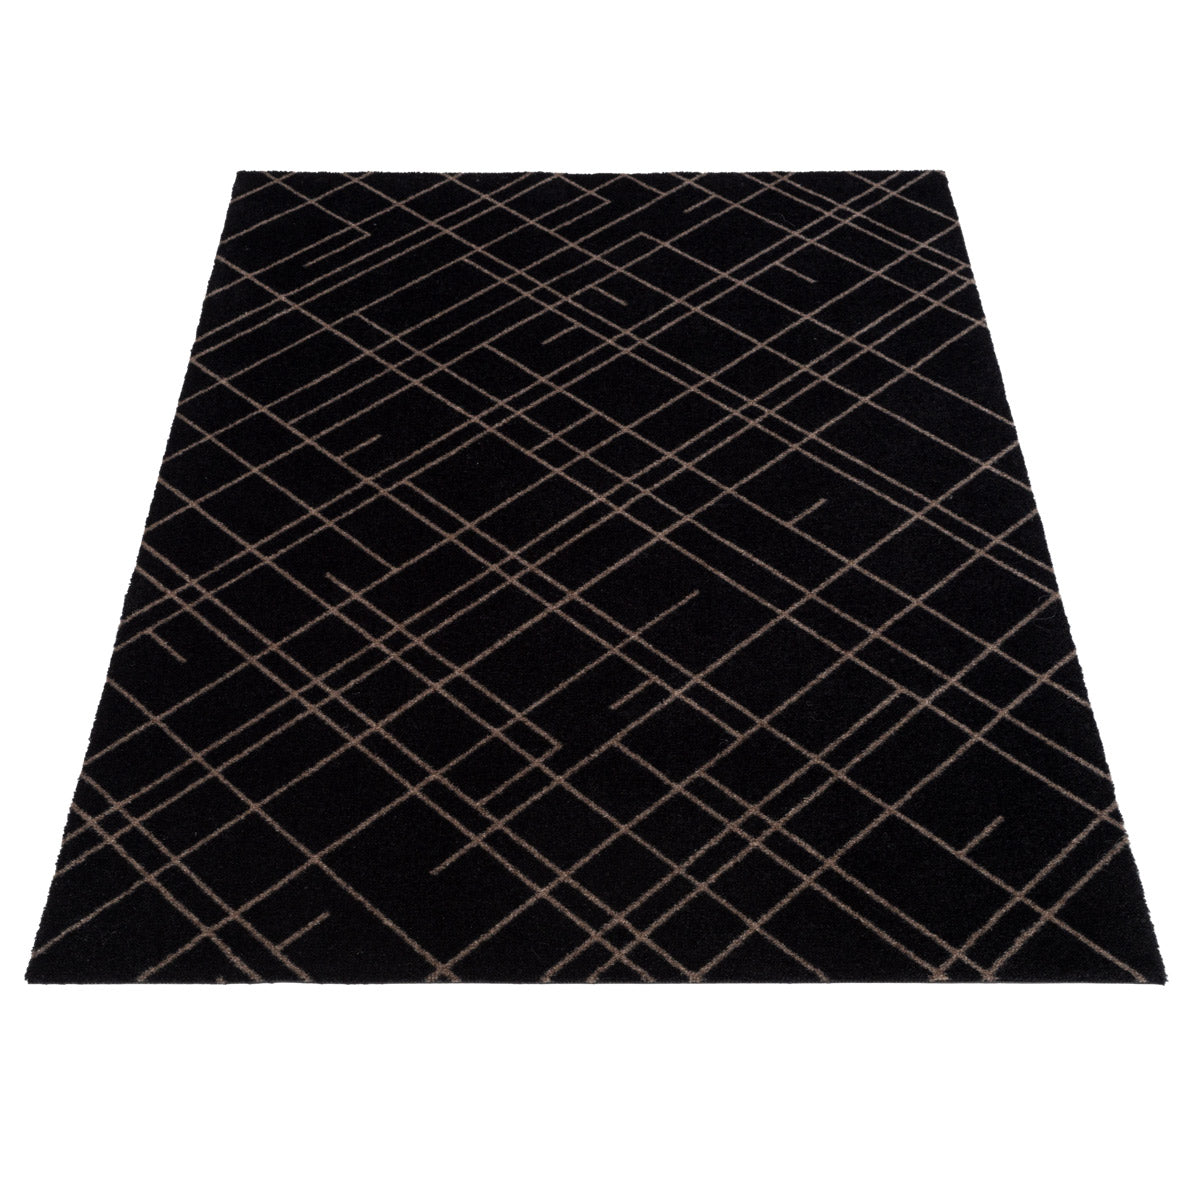 Bodenmatte 90 x 130 cm - Linien/Sandschwarz